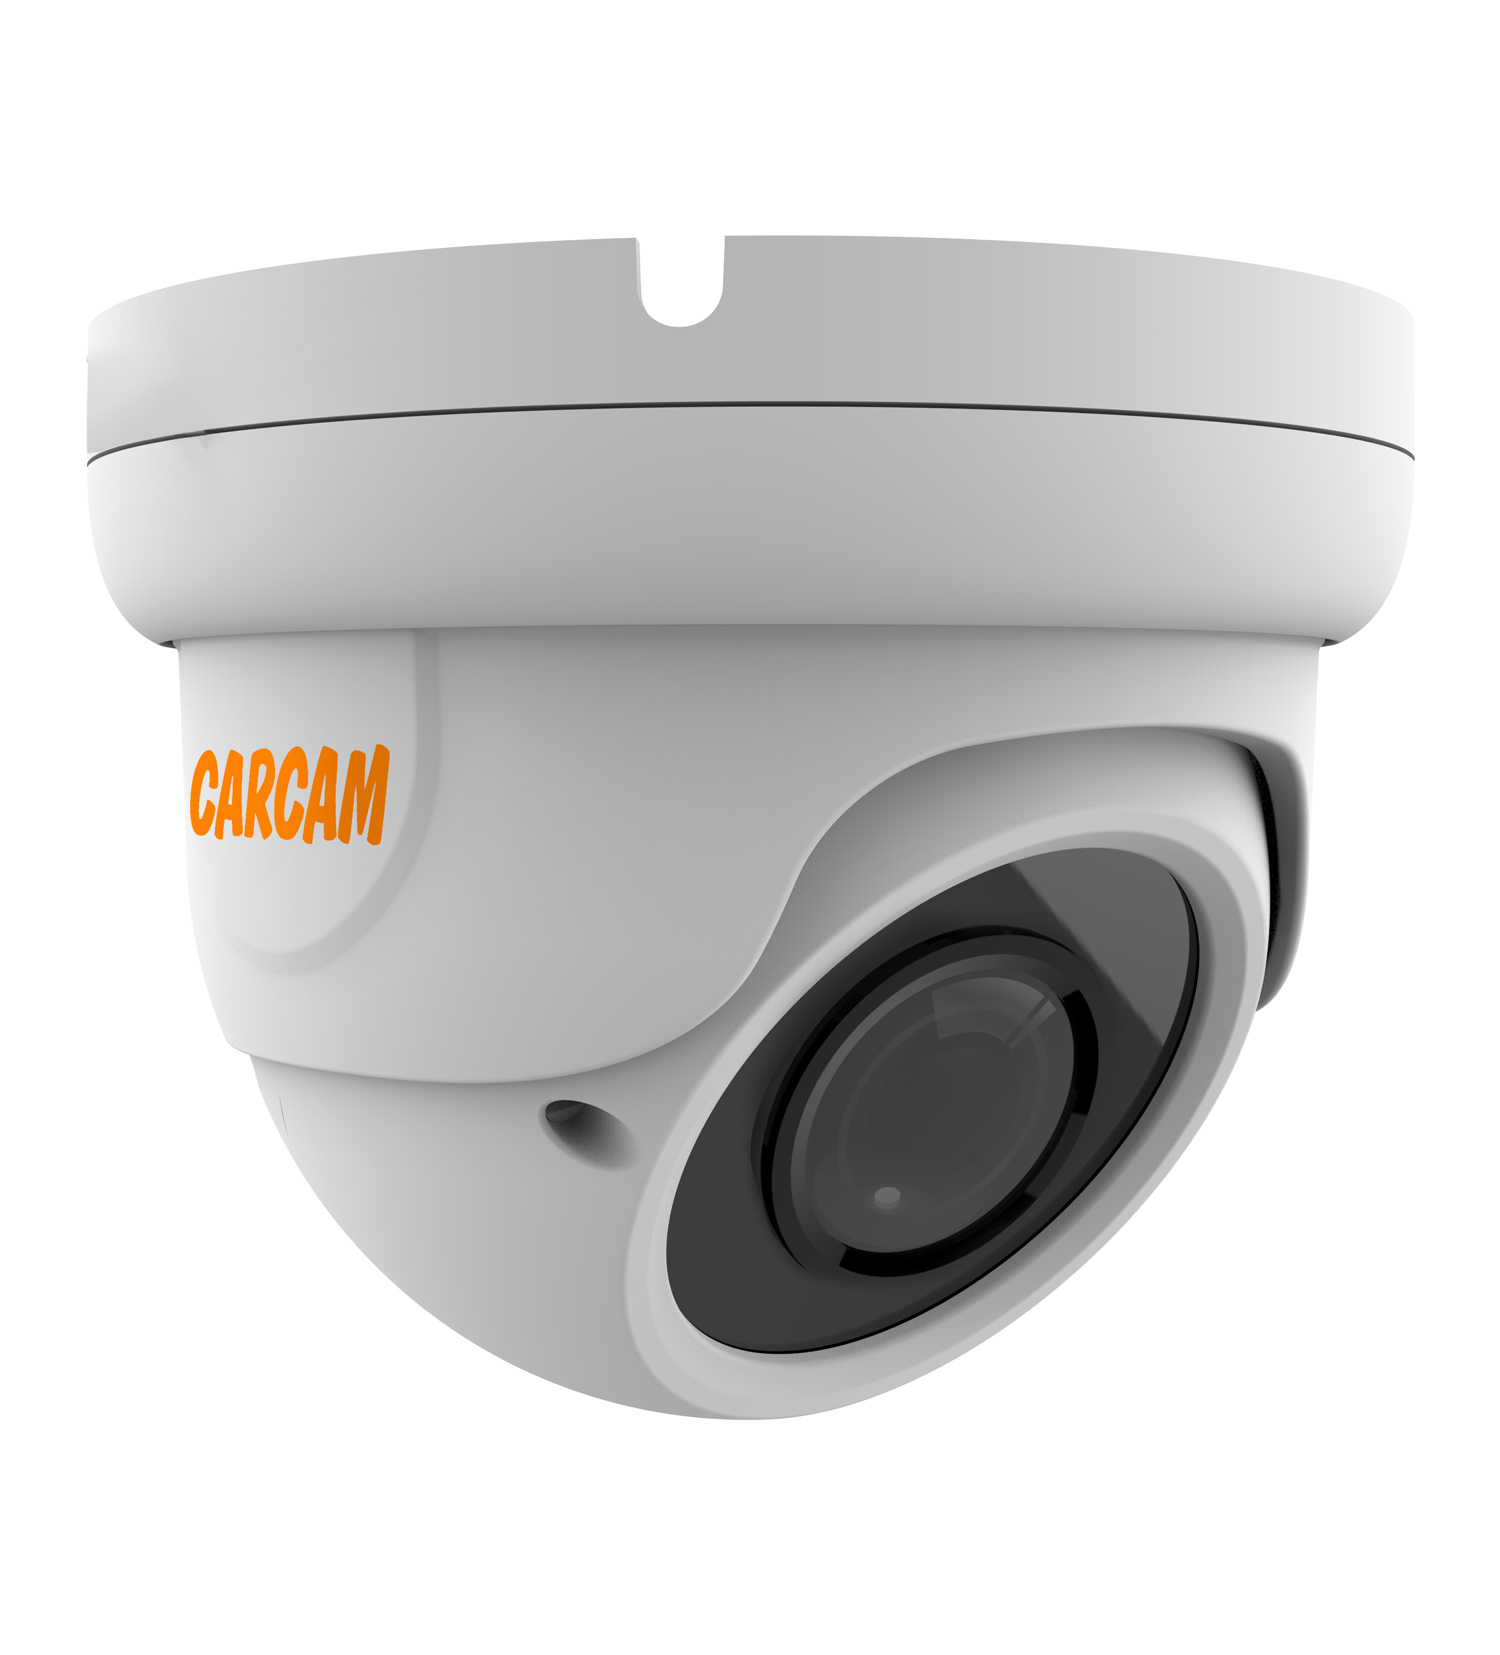 Купольная AHD-камера CARCAM 5MP Dome HD Camera 5041 (2.8-12mm) купольная ip камера carcam 8mp dome ip camera 8069sdm